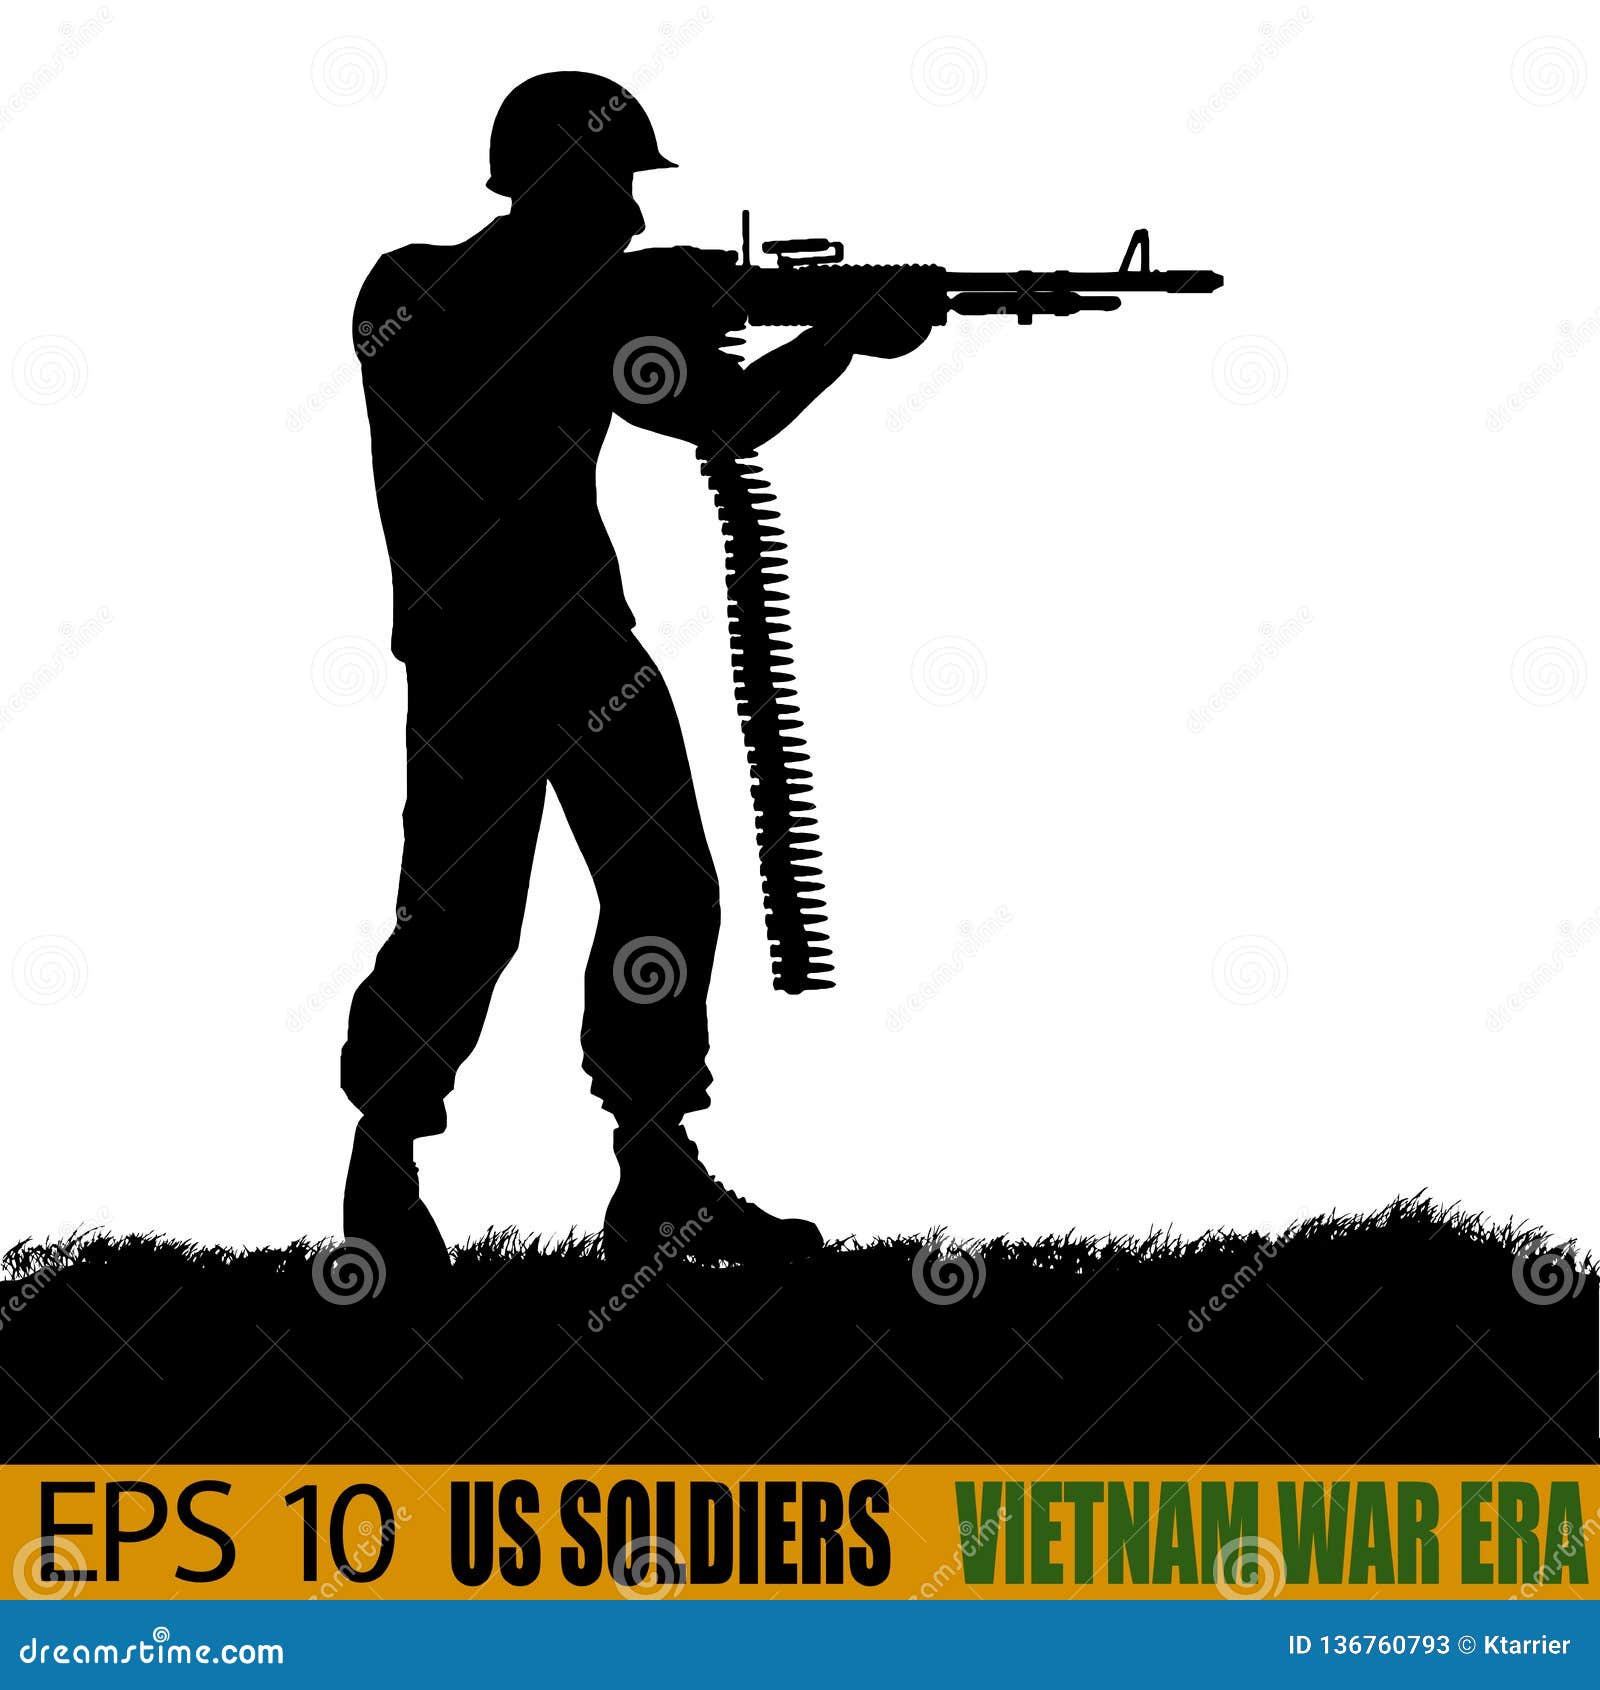 Download US Soldiers From Vietnam War Era Stock Vector ...